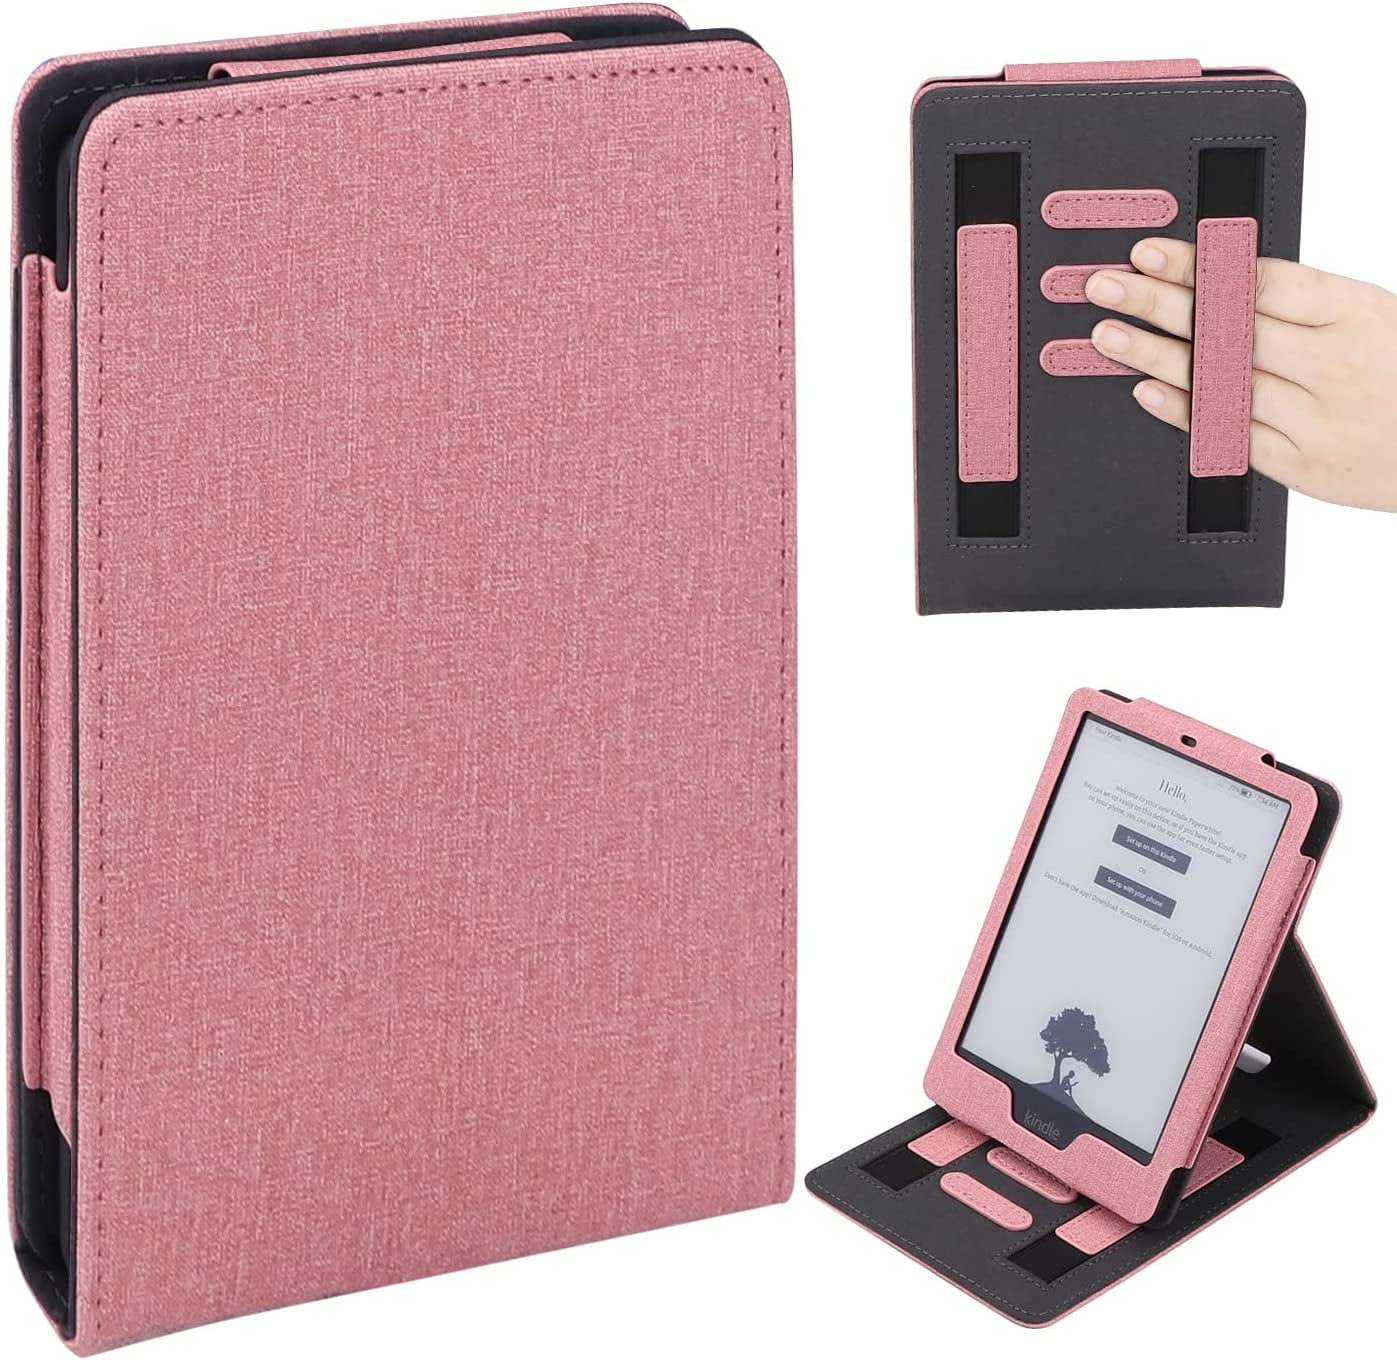 Paquete de accesorios de viaje para tableta con funda rosa compatible con  (Fire HD, Kindle Paperwhite, todas las tabletas de hasta 10 pulgadas)  Conceptos básicos digitales TABACCPINK_AG1_G2